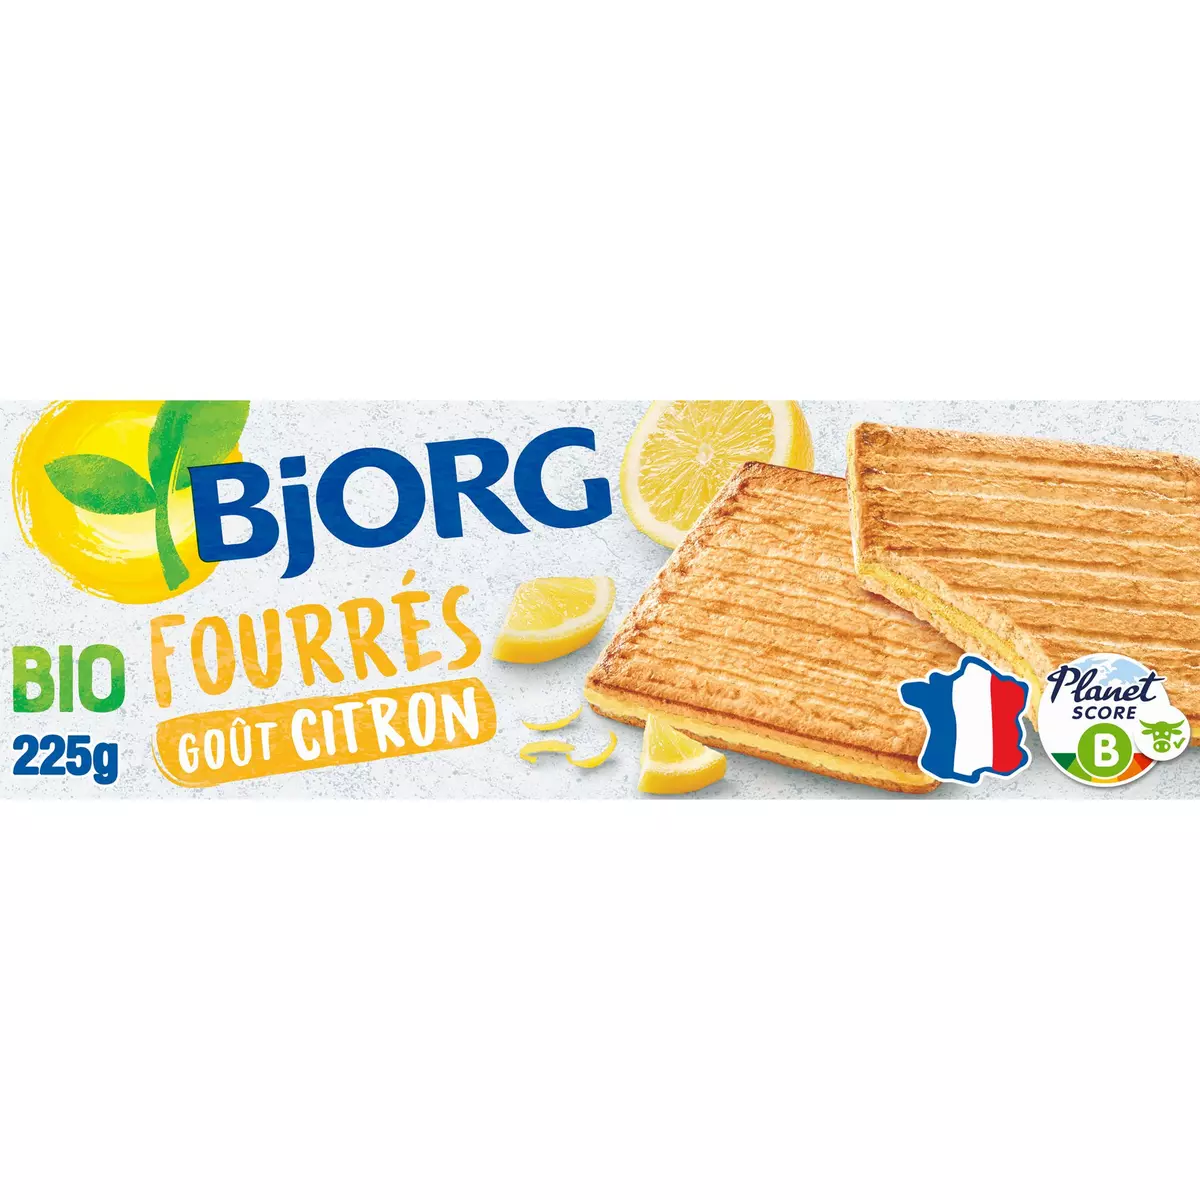 BJORG Biscuits bio fourrés au citron Bio 225g